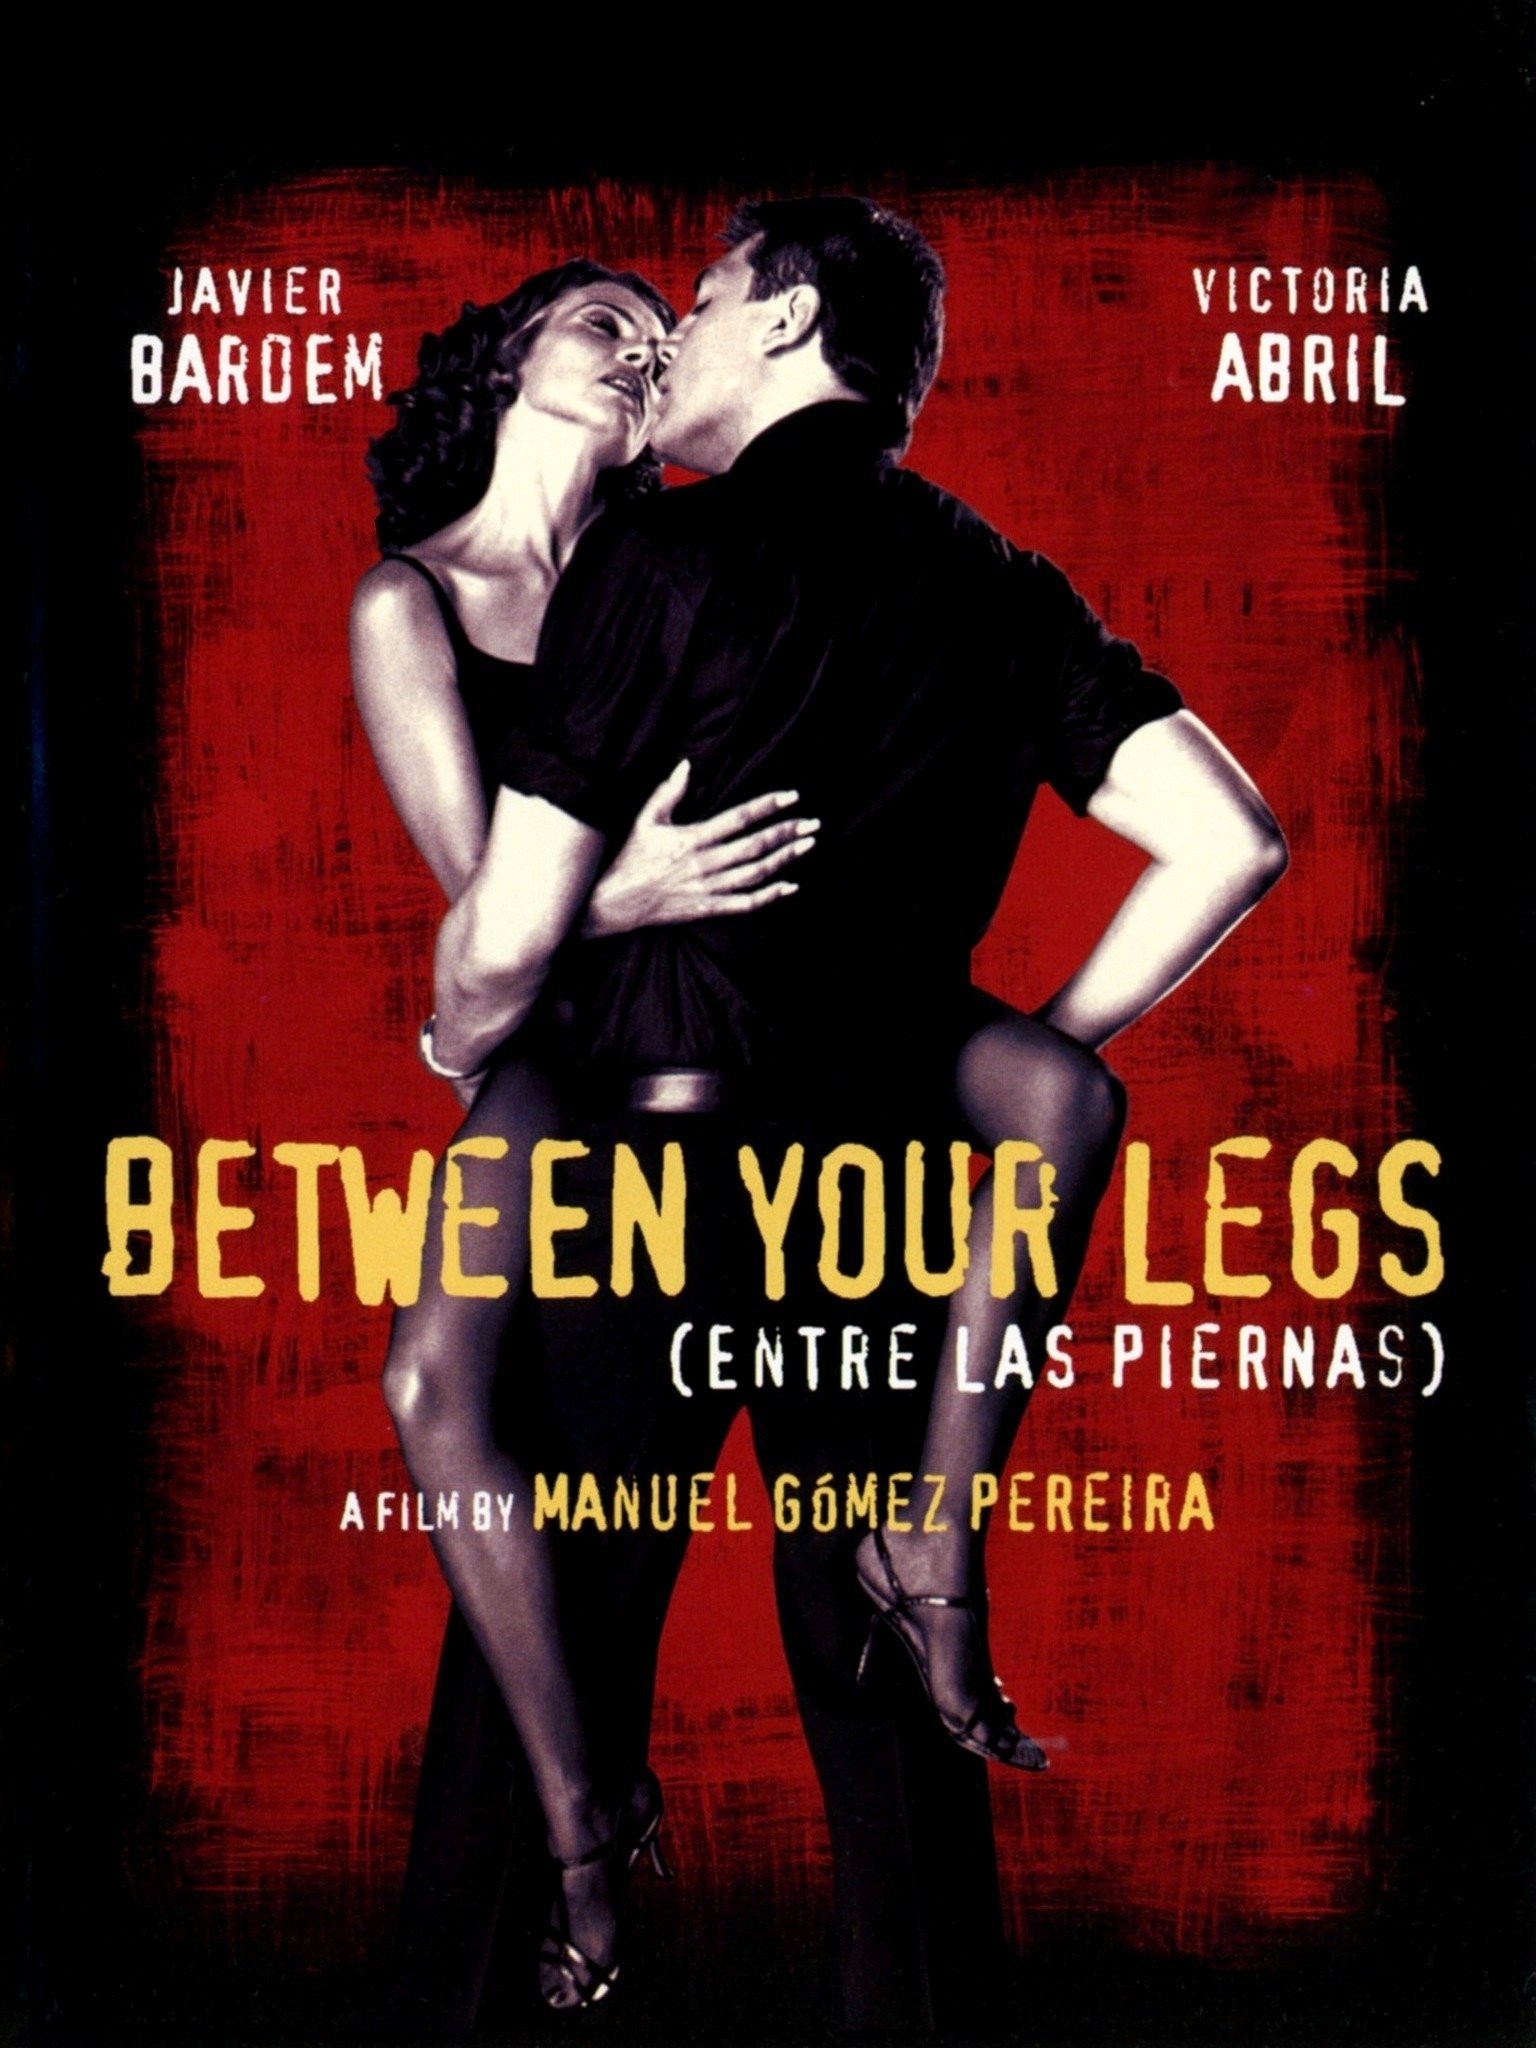 Between Your Legs